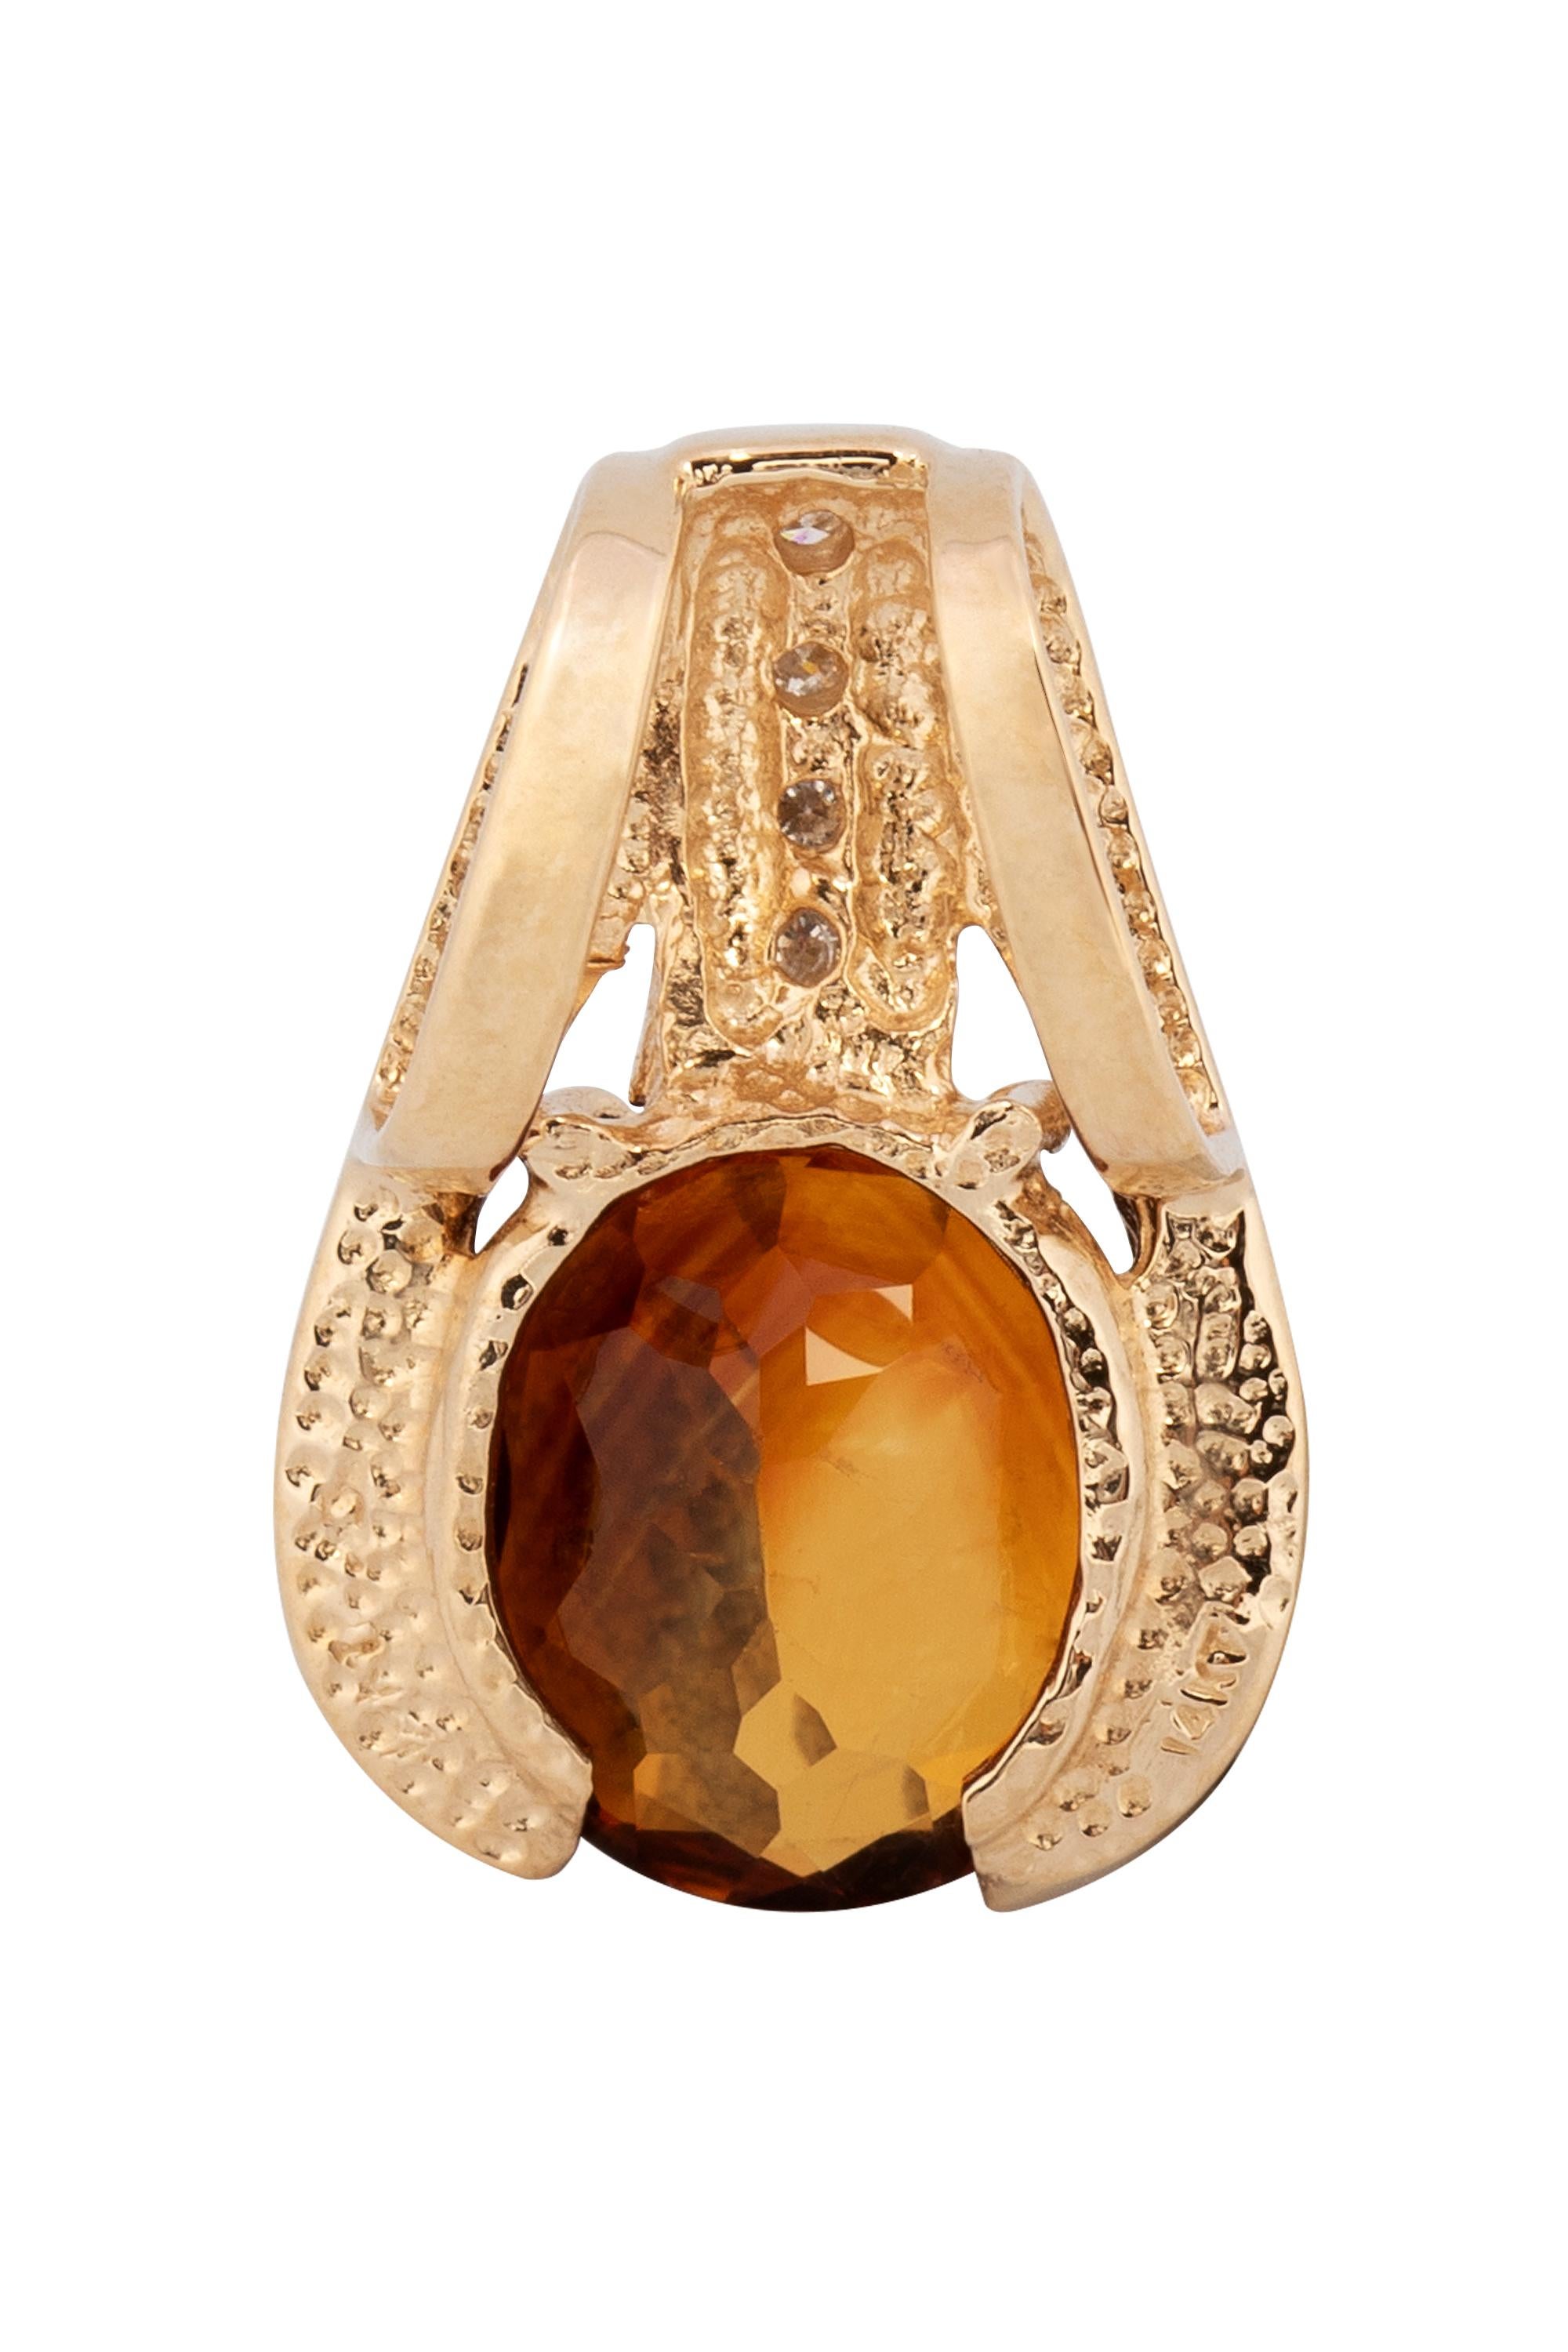 Dieser moderne Perlenschmuck zeichnet sich durch einen bernsteinfarbenen, facettierten Citrin aus, der in hochglanzpoliertes 14-karätiges Gelbgold gefasst ist und durch eine Reihe von vier runden Diamanten im Brillantschliff mit einem Gesamtgewicht